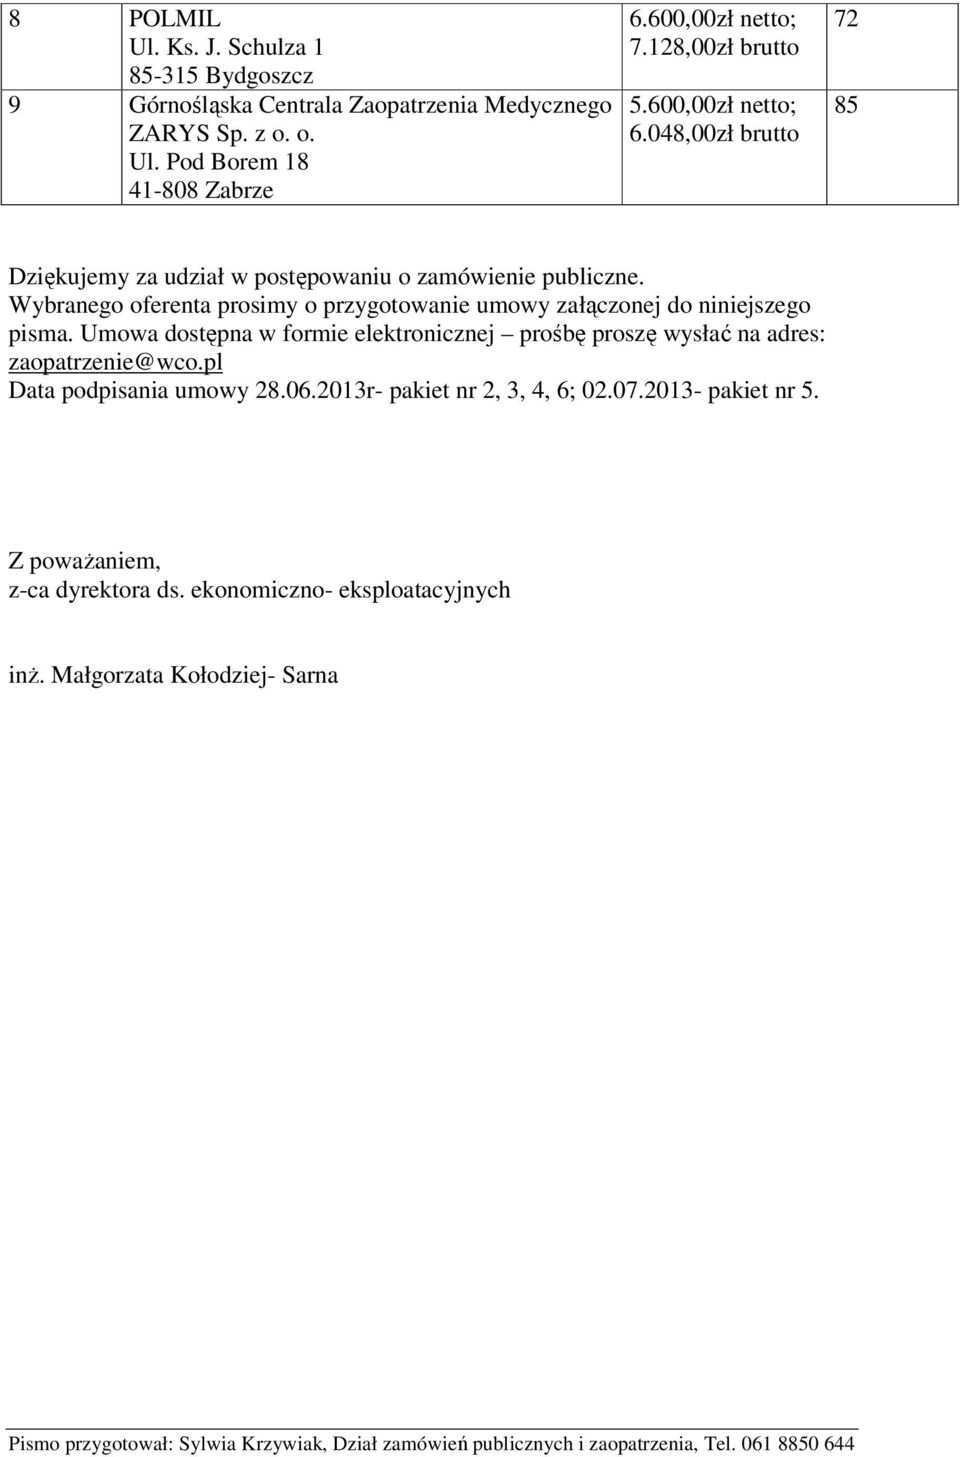 Umowa dostępna w formie elektronicznej prośbę proszę wysłać na adres: zaopatrzenie@wco.pl Data podpisania umowy 28.06.2013r- pakiet nr 2, 3, 4, 6; 02.07.2013- pakiet nr 5.